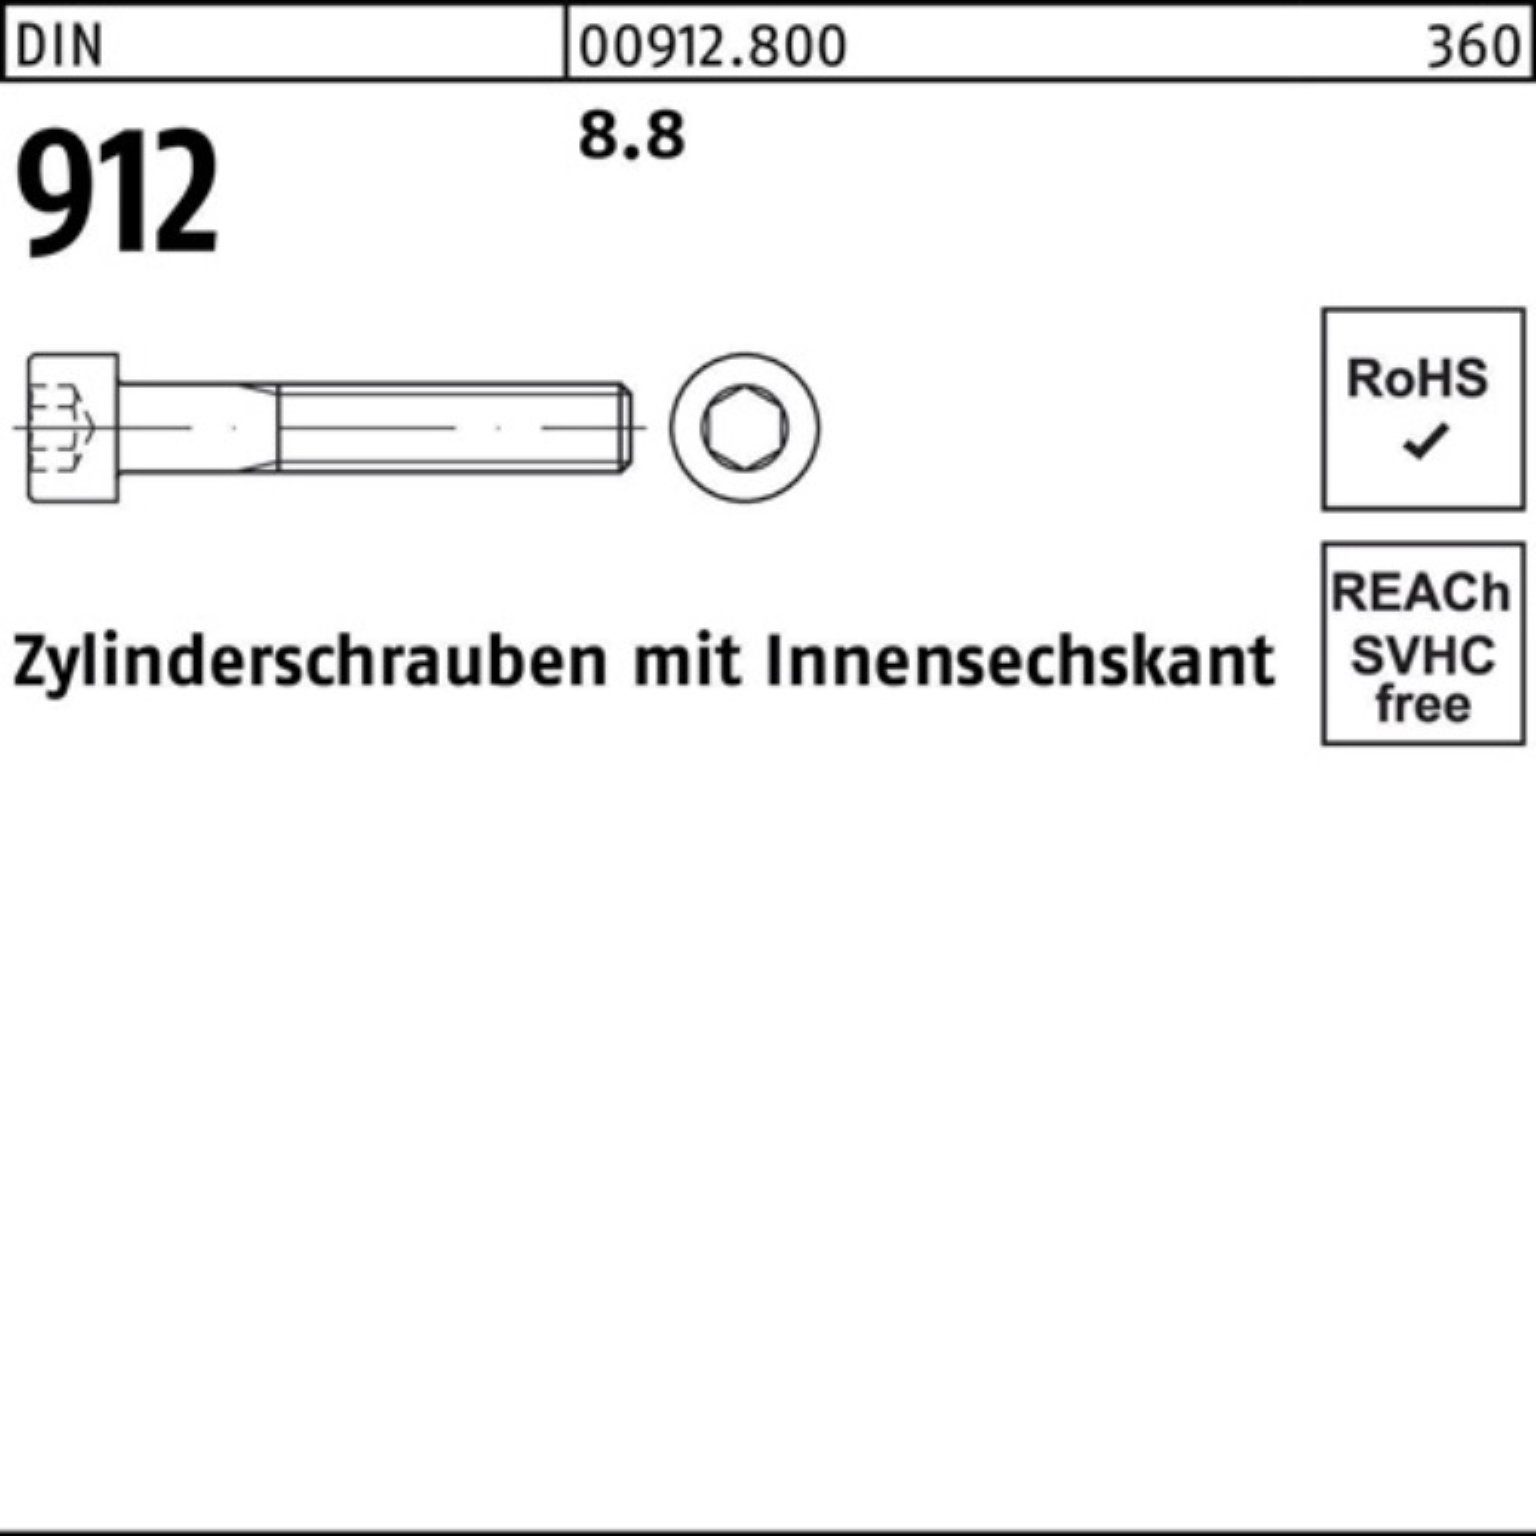 Zylinderschraube Innen-6kt 390 DIN 8.8 DI 912 Stück 100er 1 Reyher Pack Zylinderschraube M24x